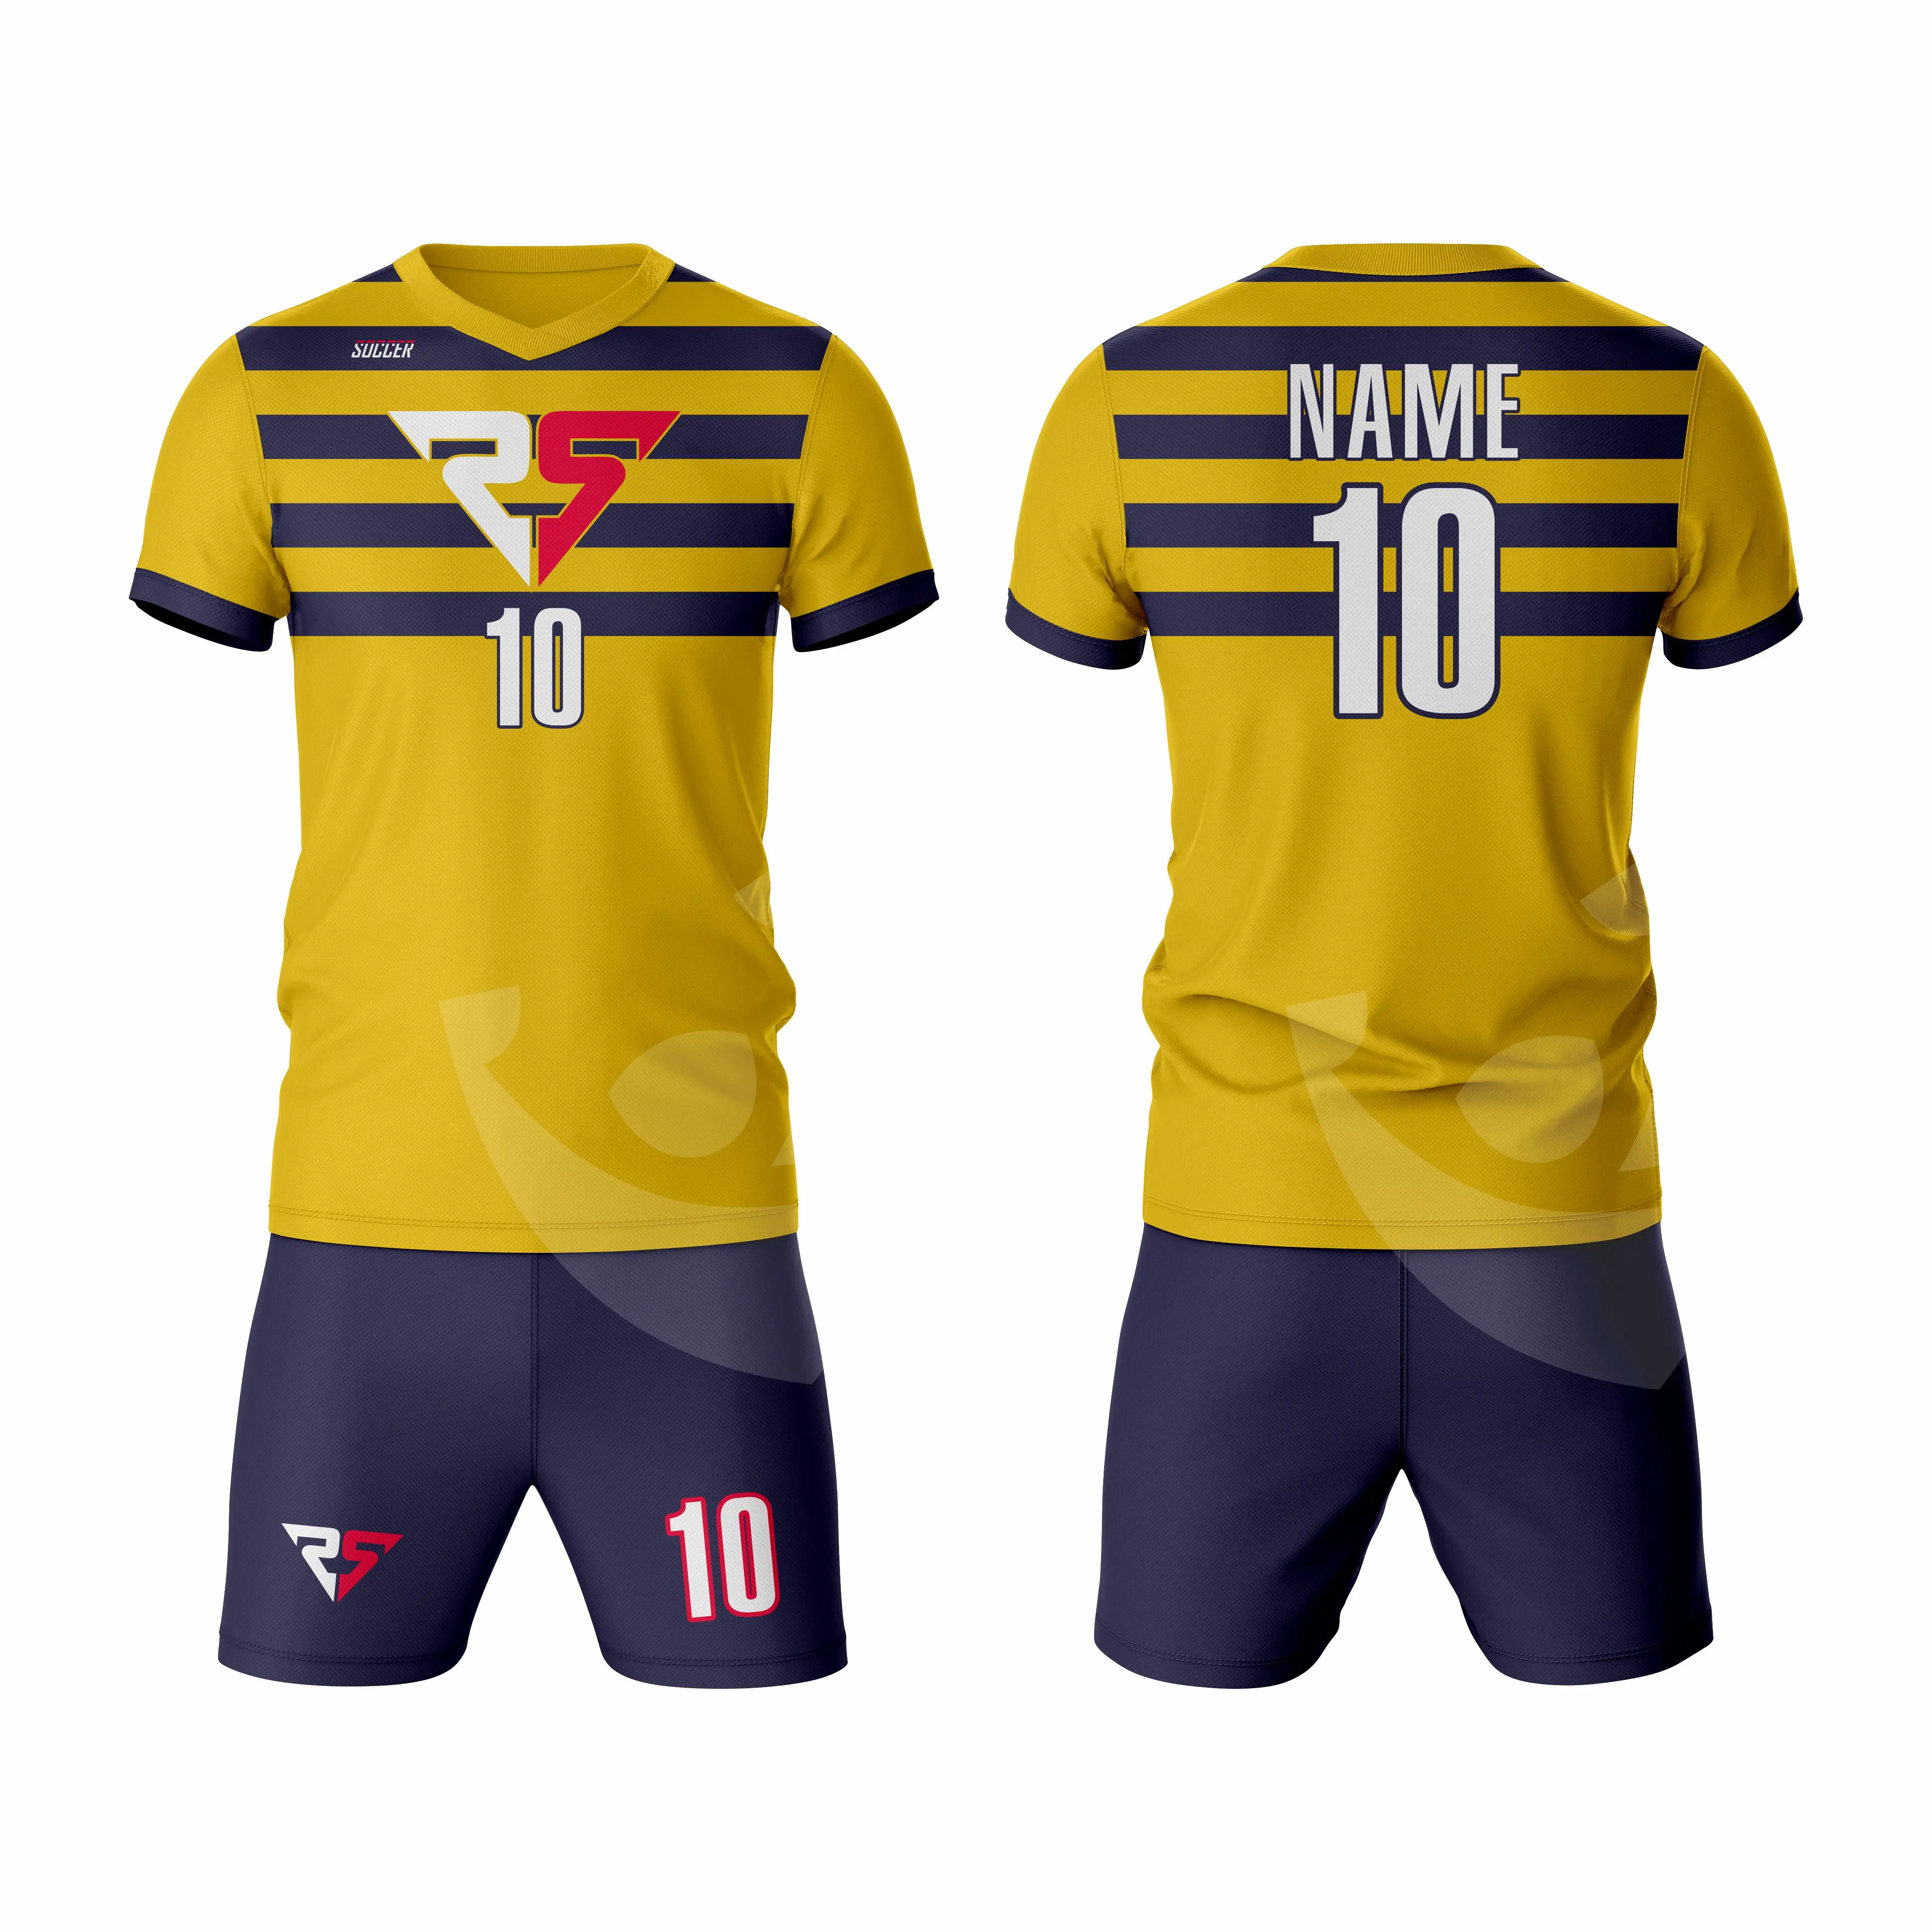 Uniforme de futebol personalizado com estampa sublimada barata, conjunto de poliéster/algodão para clube de futebol, camisa de futebol personalizada, nome personalizado da equipe